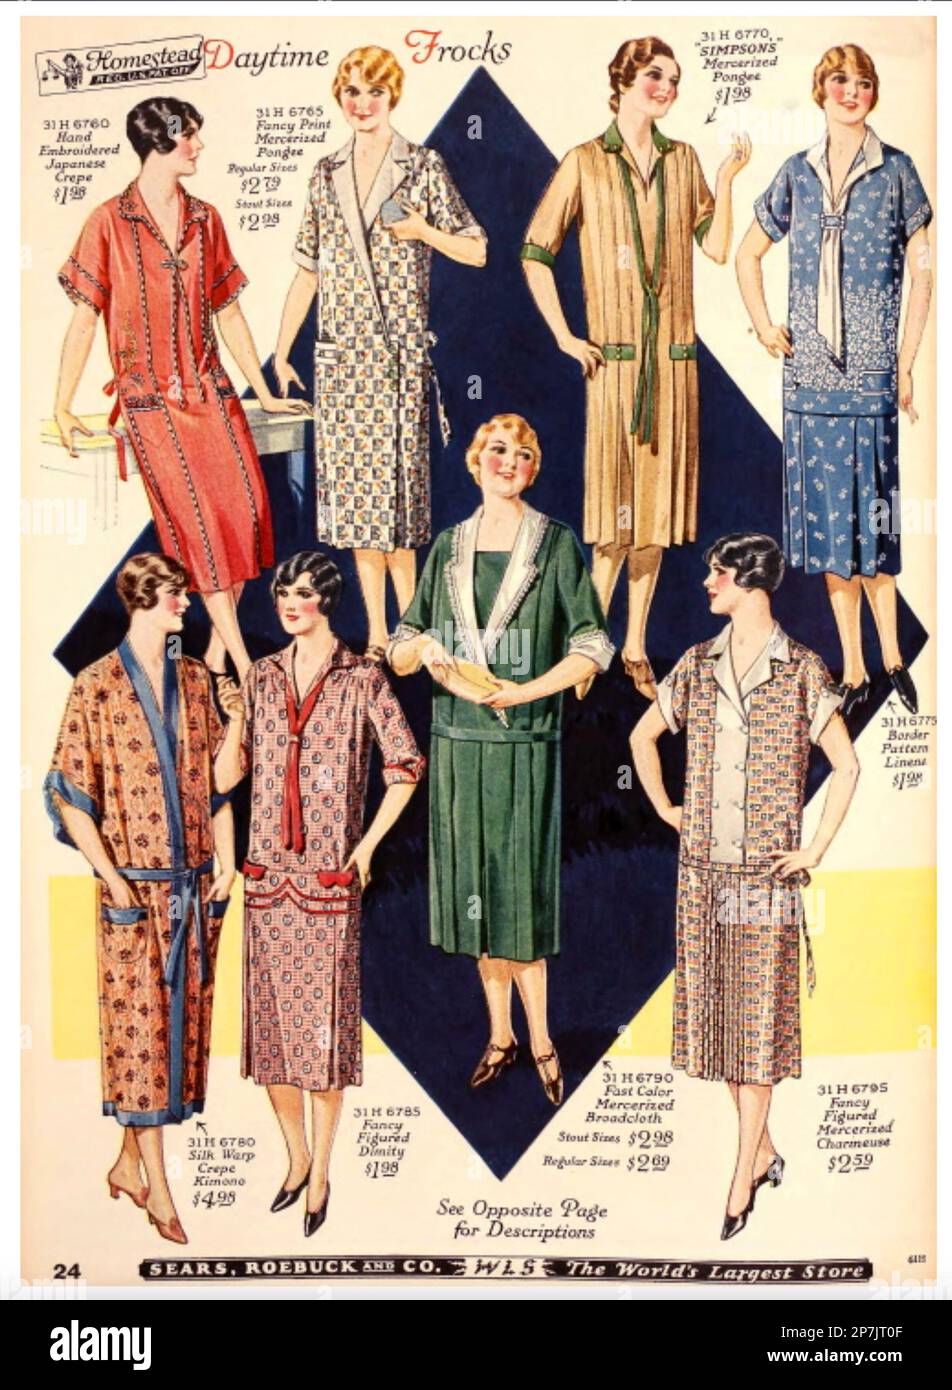 CATALOGO moda SEARS ROEBUCK 1927 per camici diurni Foto Stock